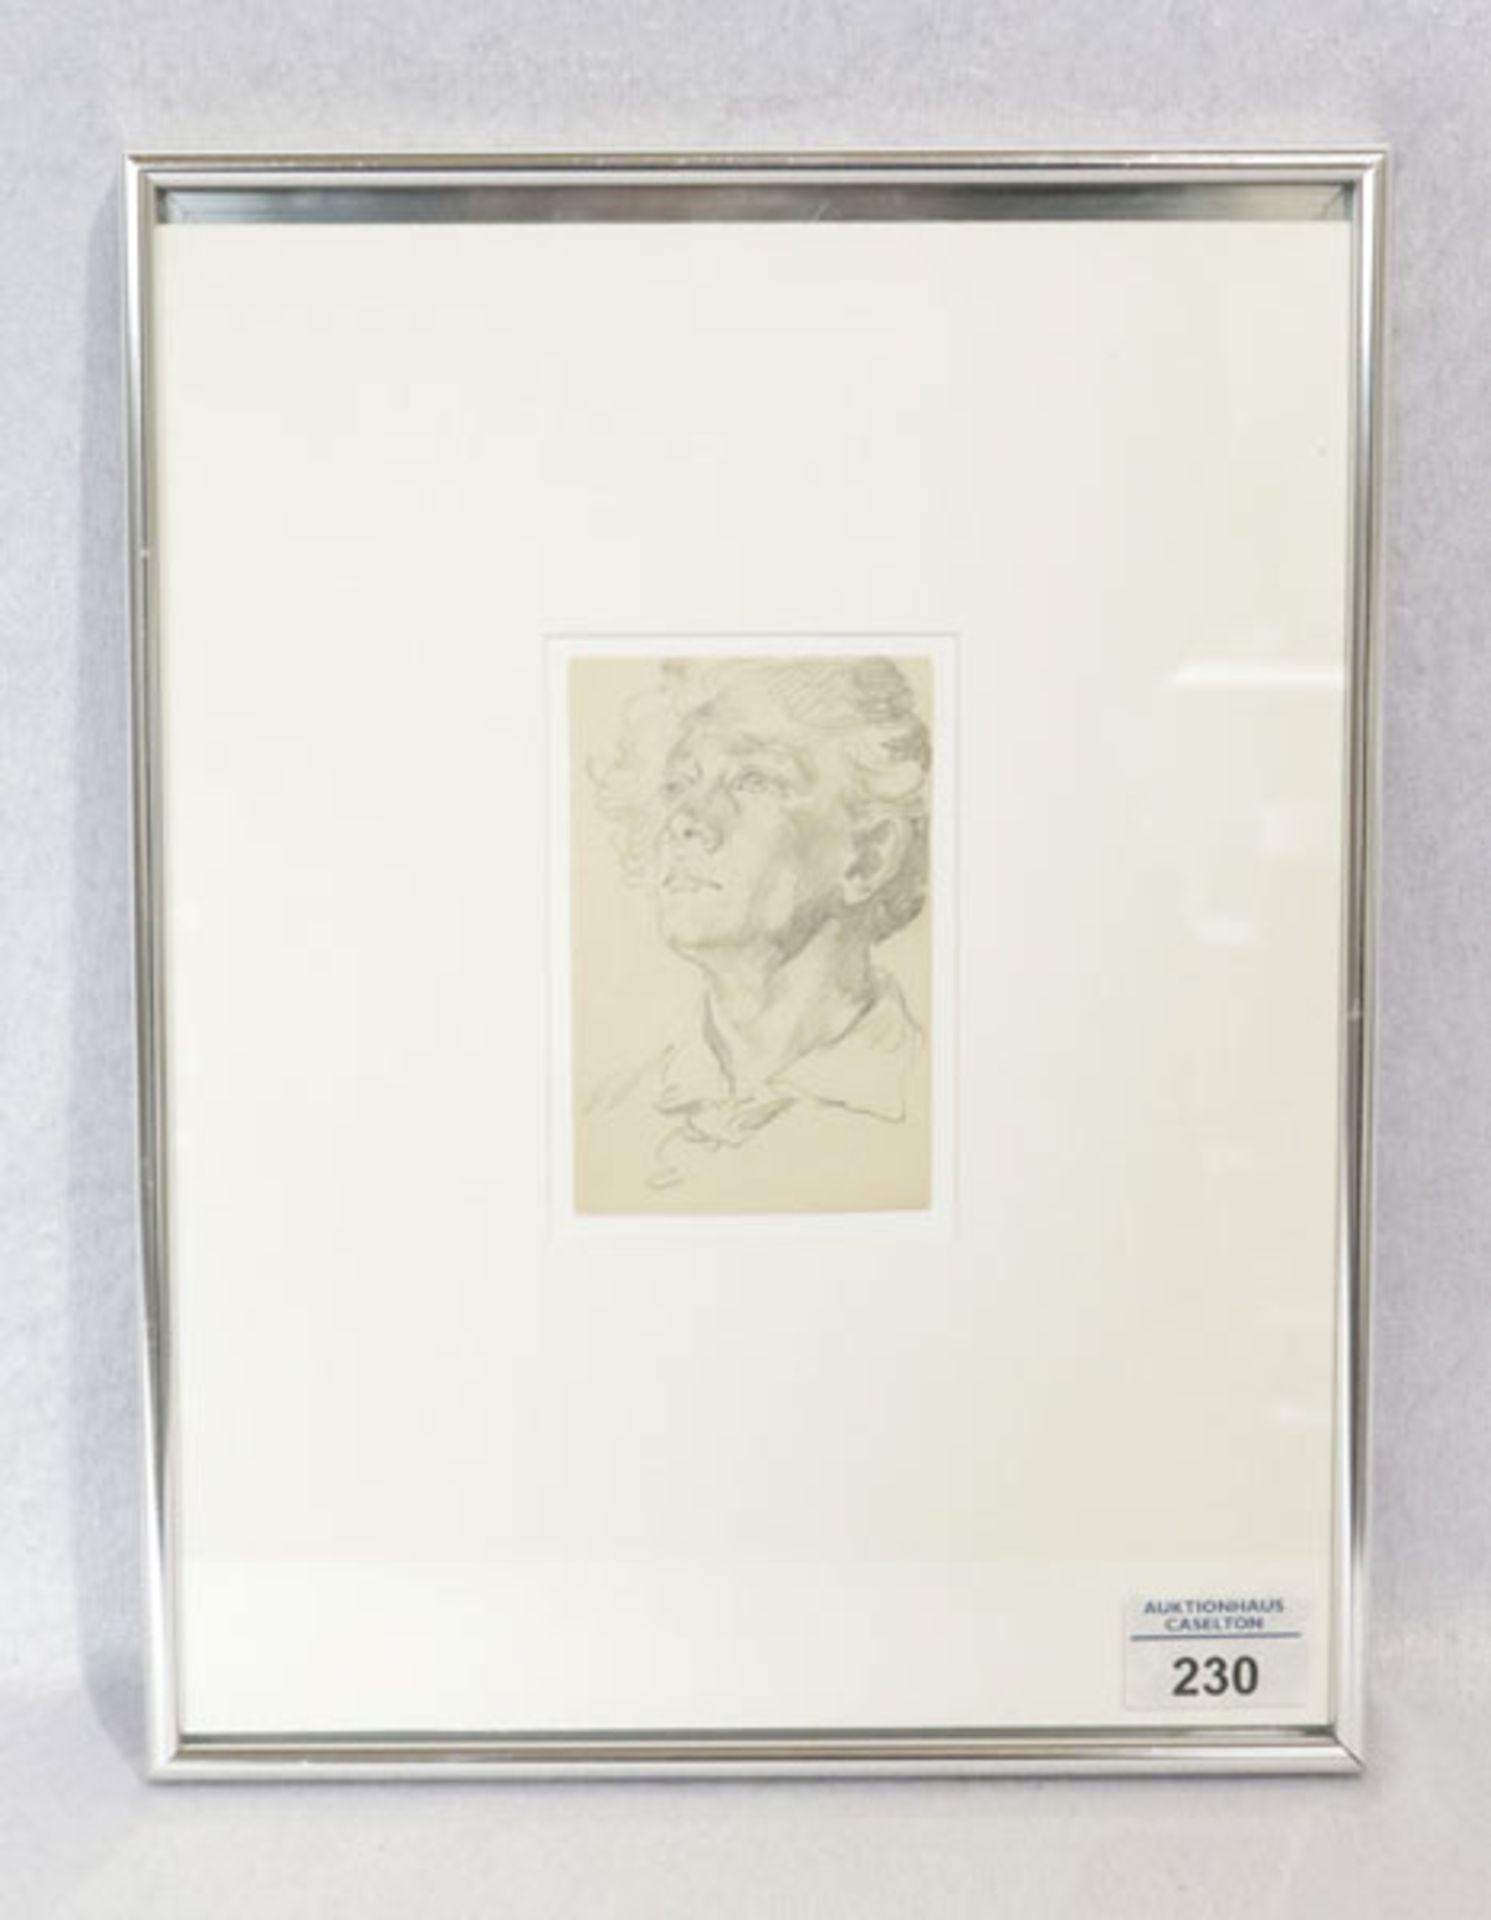 Zeichnung 'Porträt', von Anton von Werner, * 1843 + 1915, mit Passepartout unter Glas gerahmt,